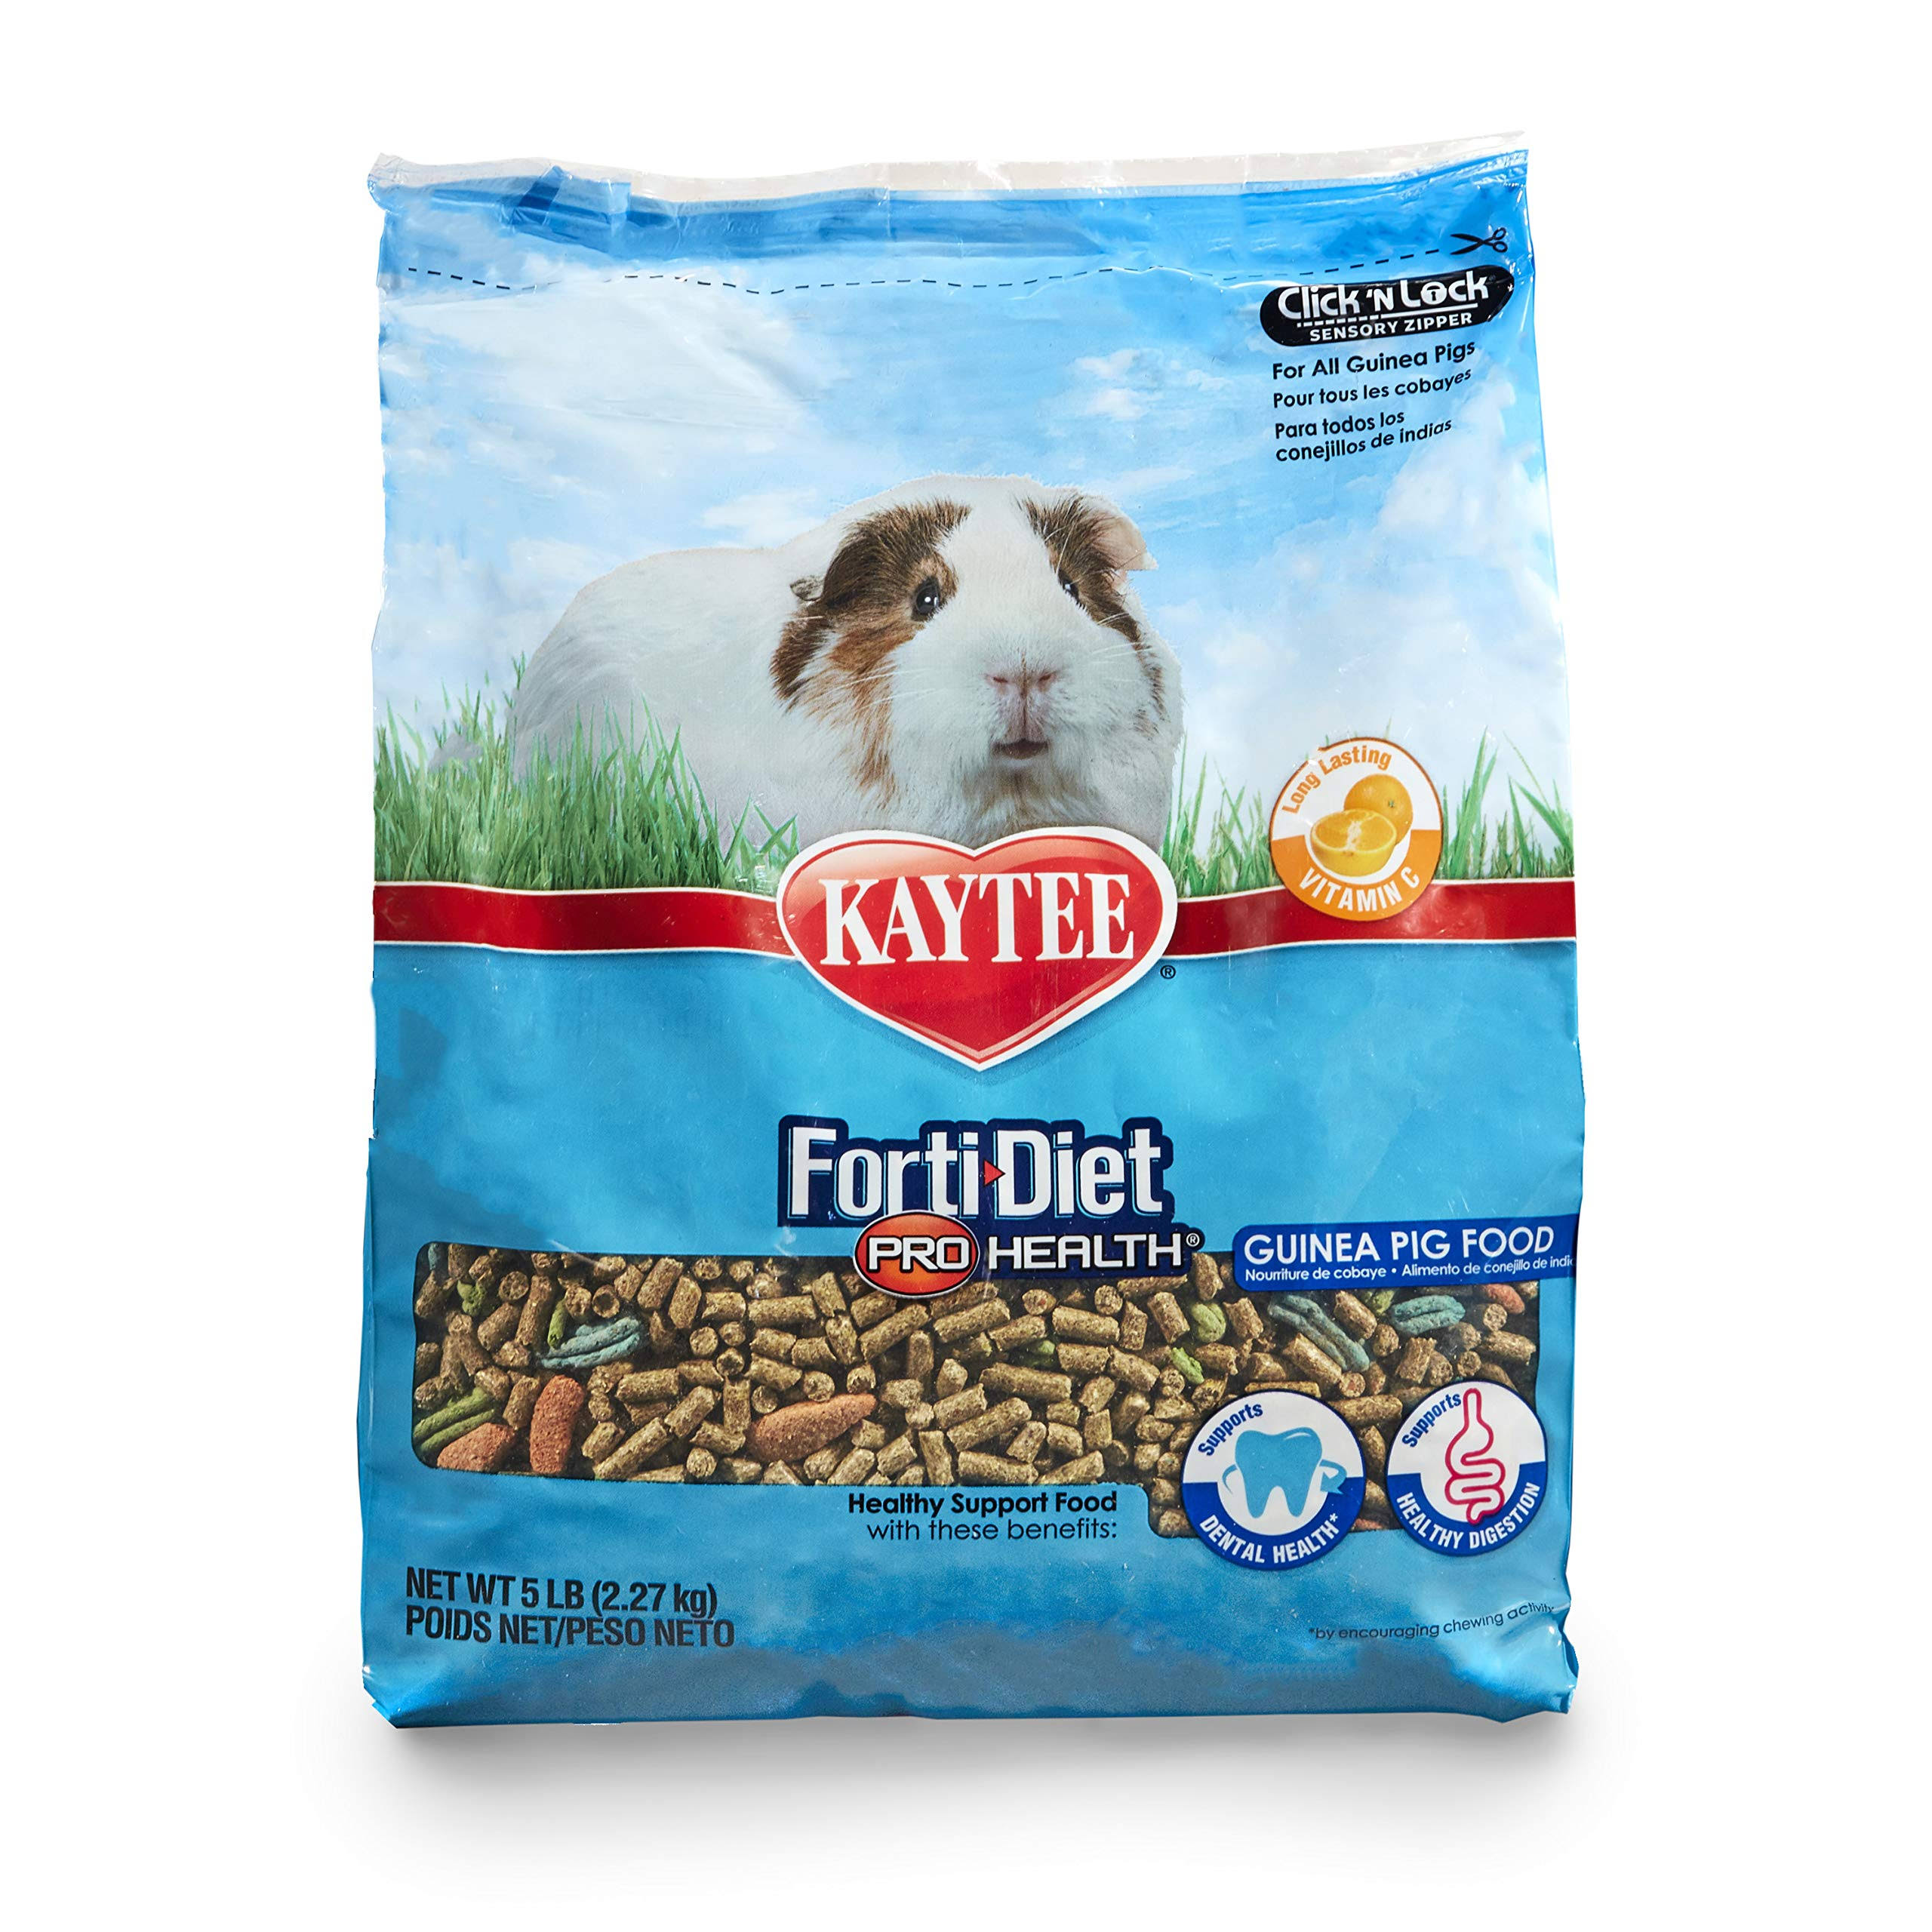 Kaytee Forti-diet Pro Health Guinea Pig Food - 5lbs